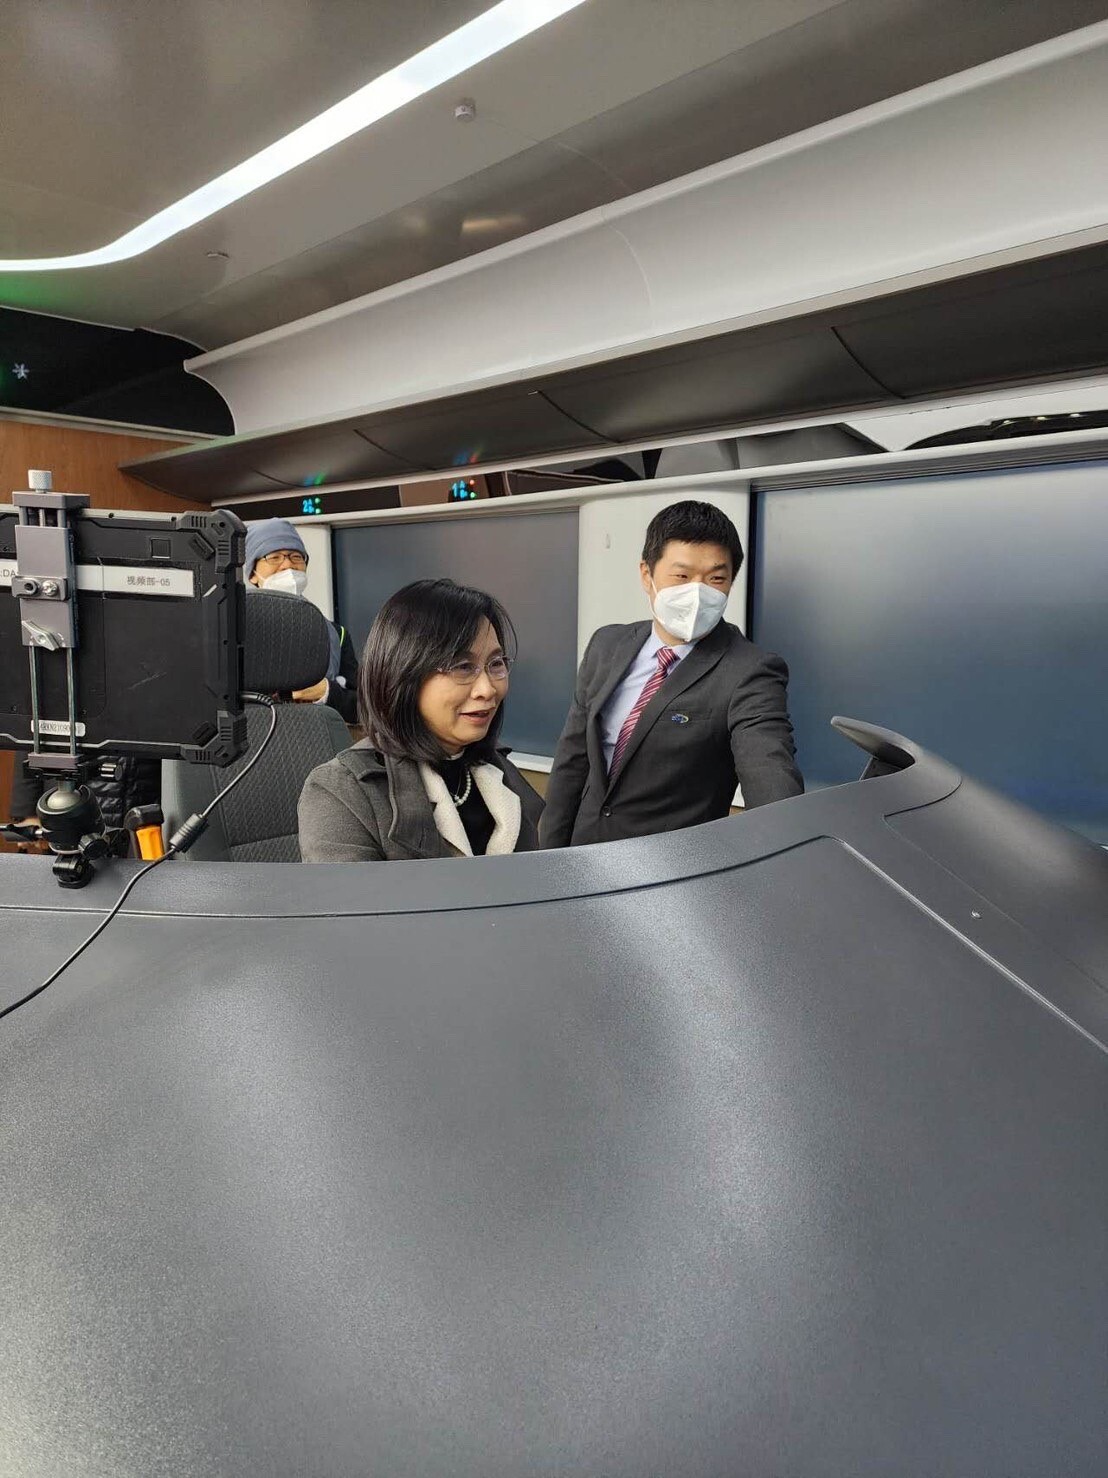 วว. ร่วมหารือสถาบัน CARS ประเทศจีน นำเทคโนโลยี นวัตกรรม  เพิ่มขีดความสามารถขนส่งทางรางของผู้ประกอบการไทย